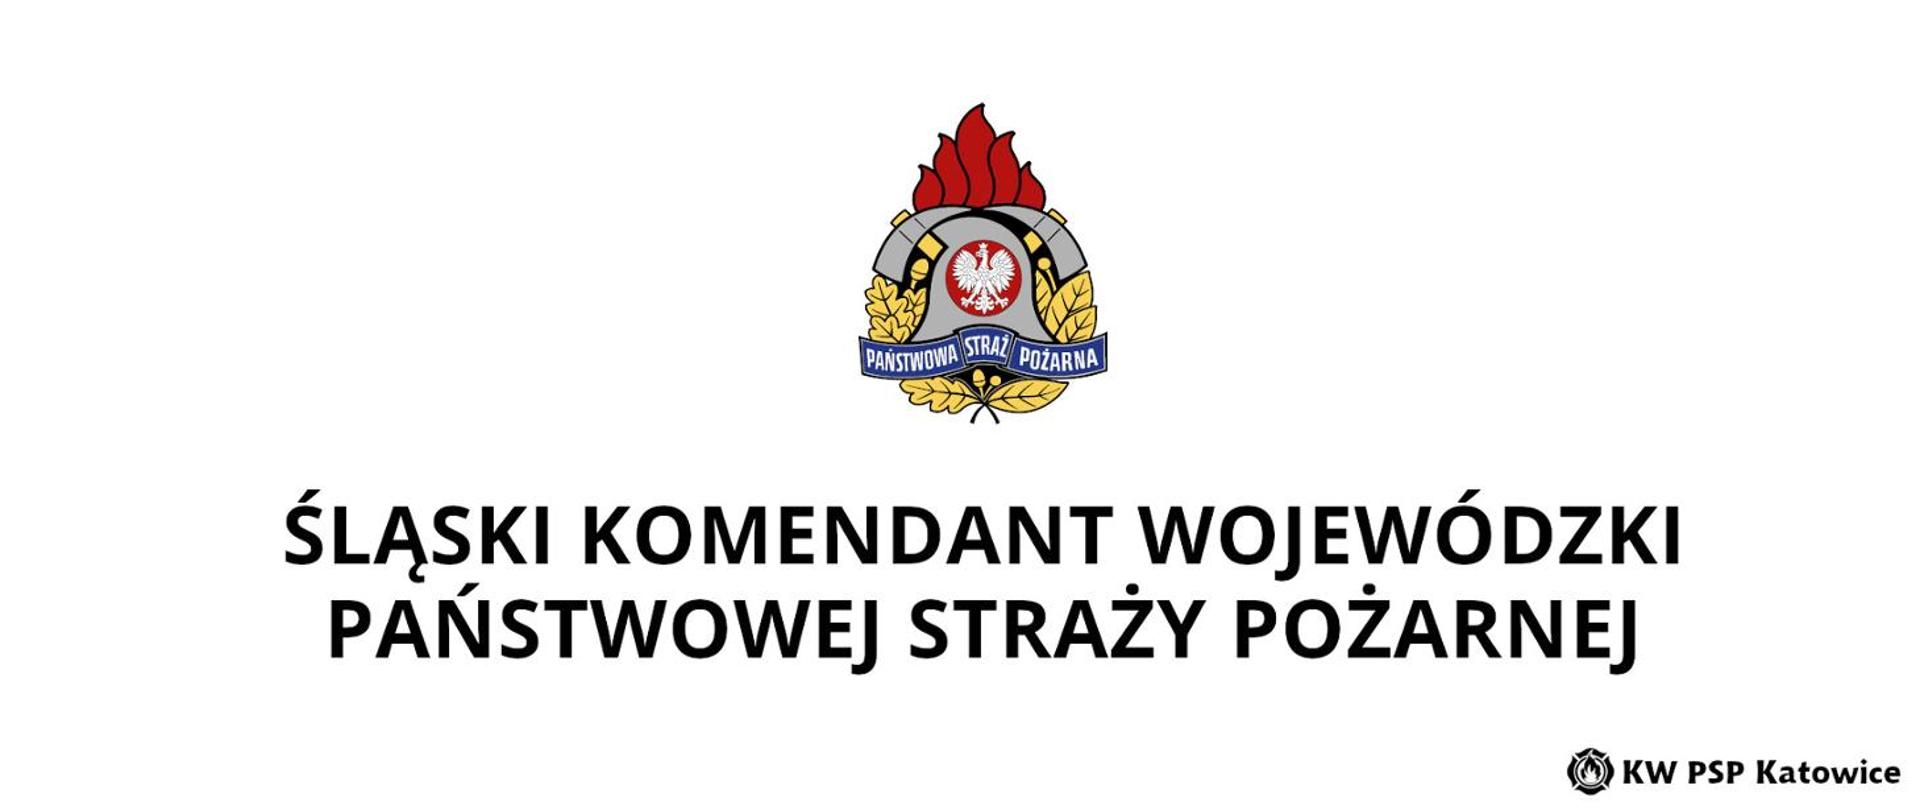 Zdjęcie przedstawia logo PSP wraz z napisem "Ślaski Komendant Wojewódzki Państwowej Straży Pożarnej"